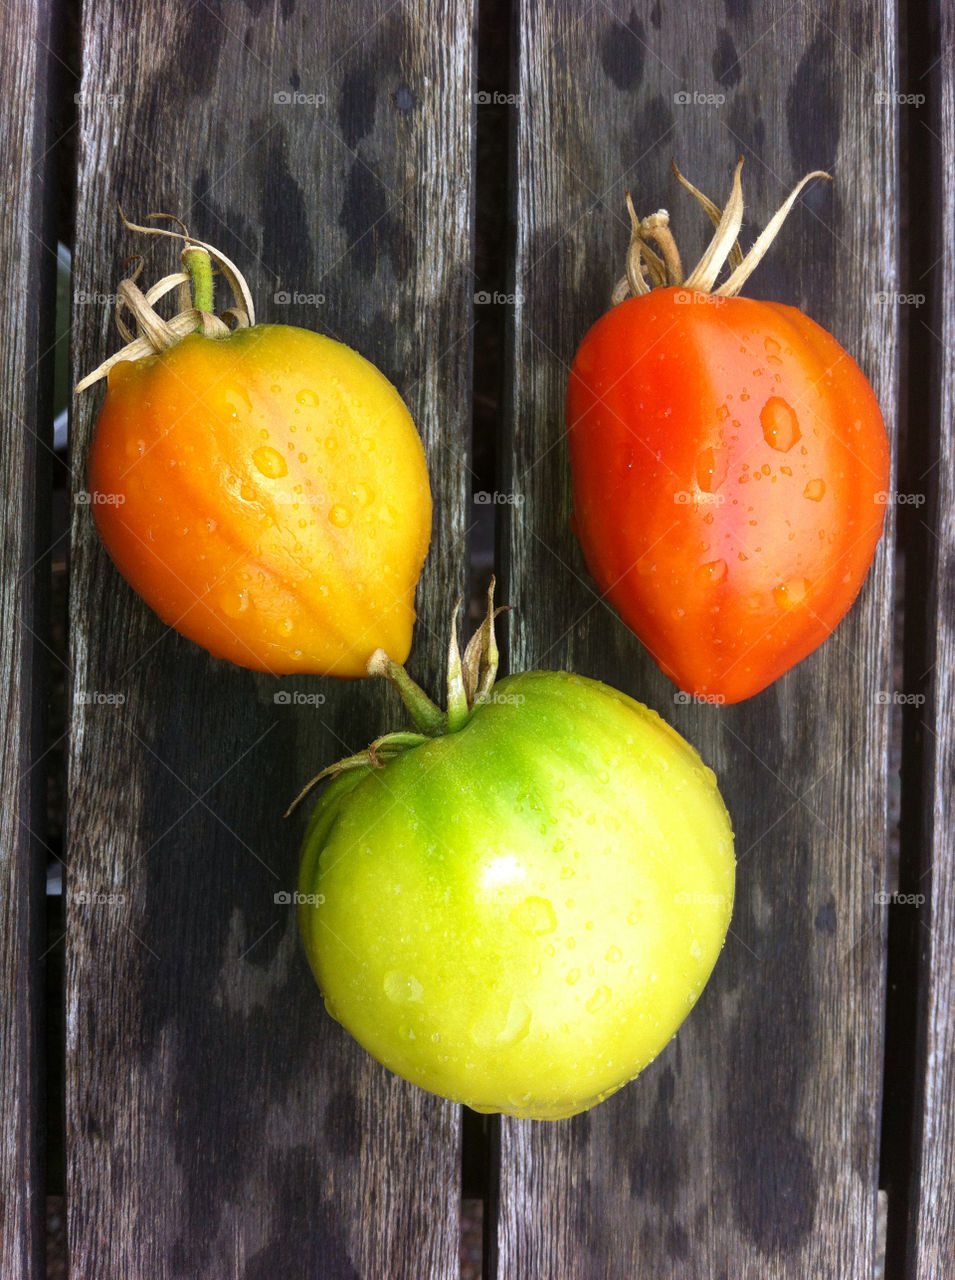 sweden garden tomato vegetables by hallis